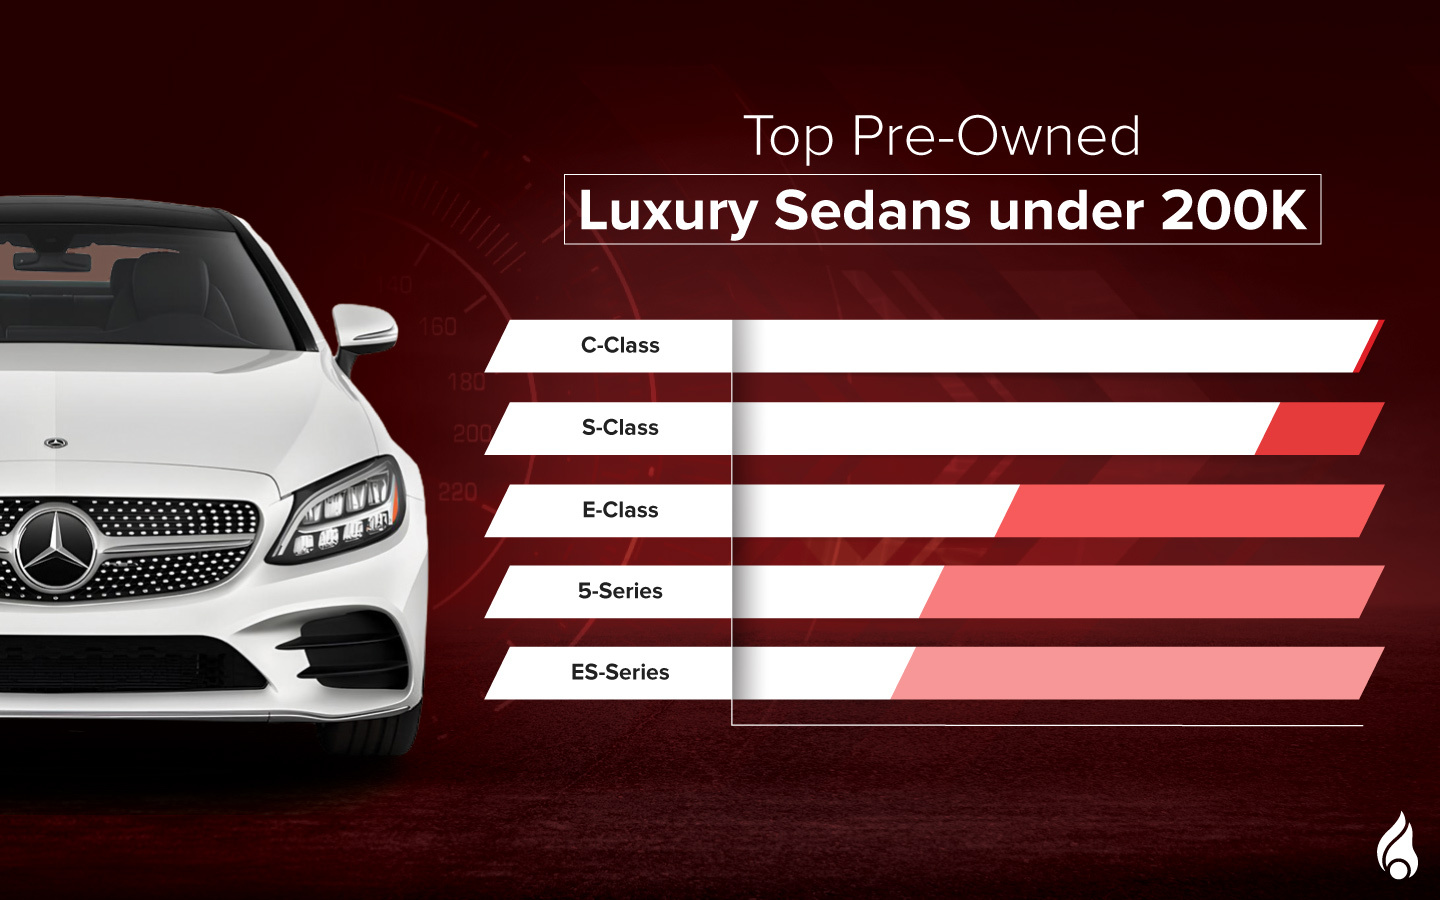 list of the top Pre-Owned Luxury Sedans under AED 200K